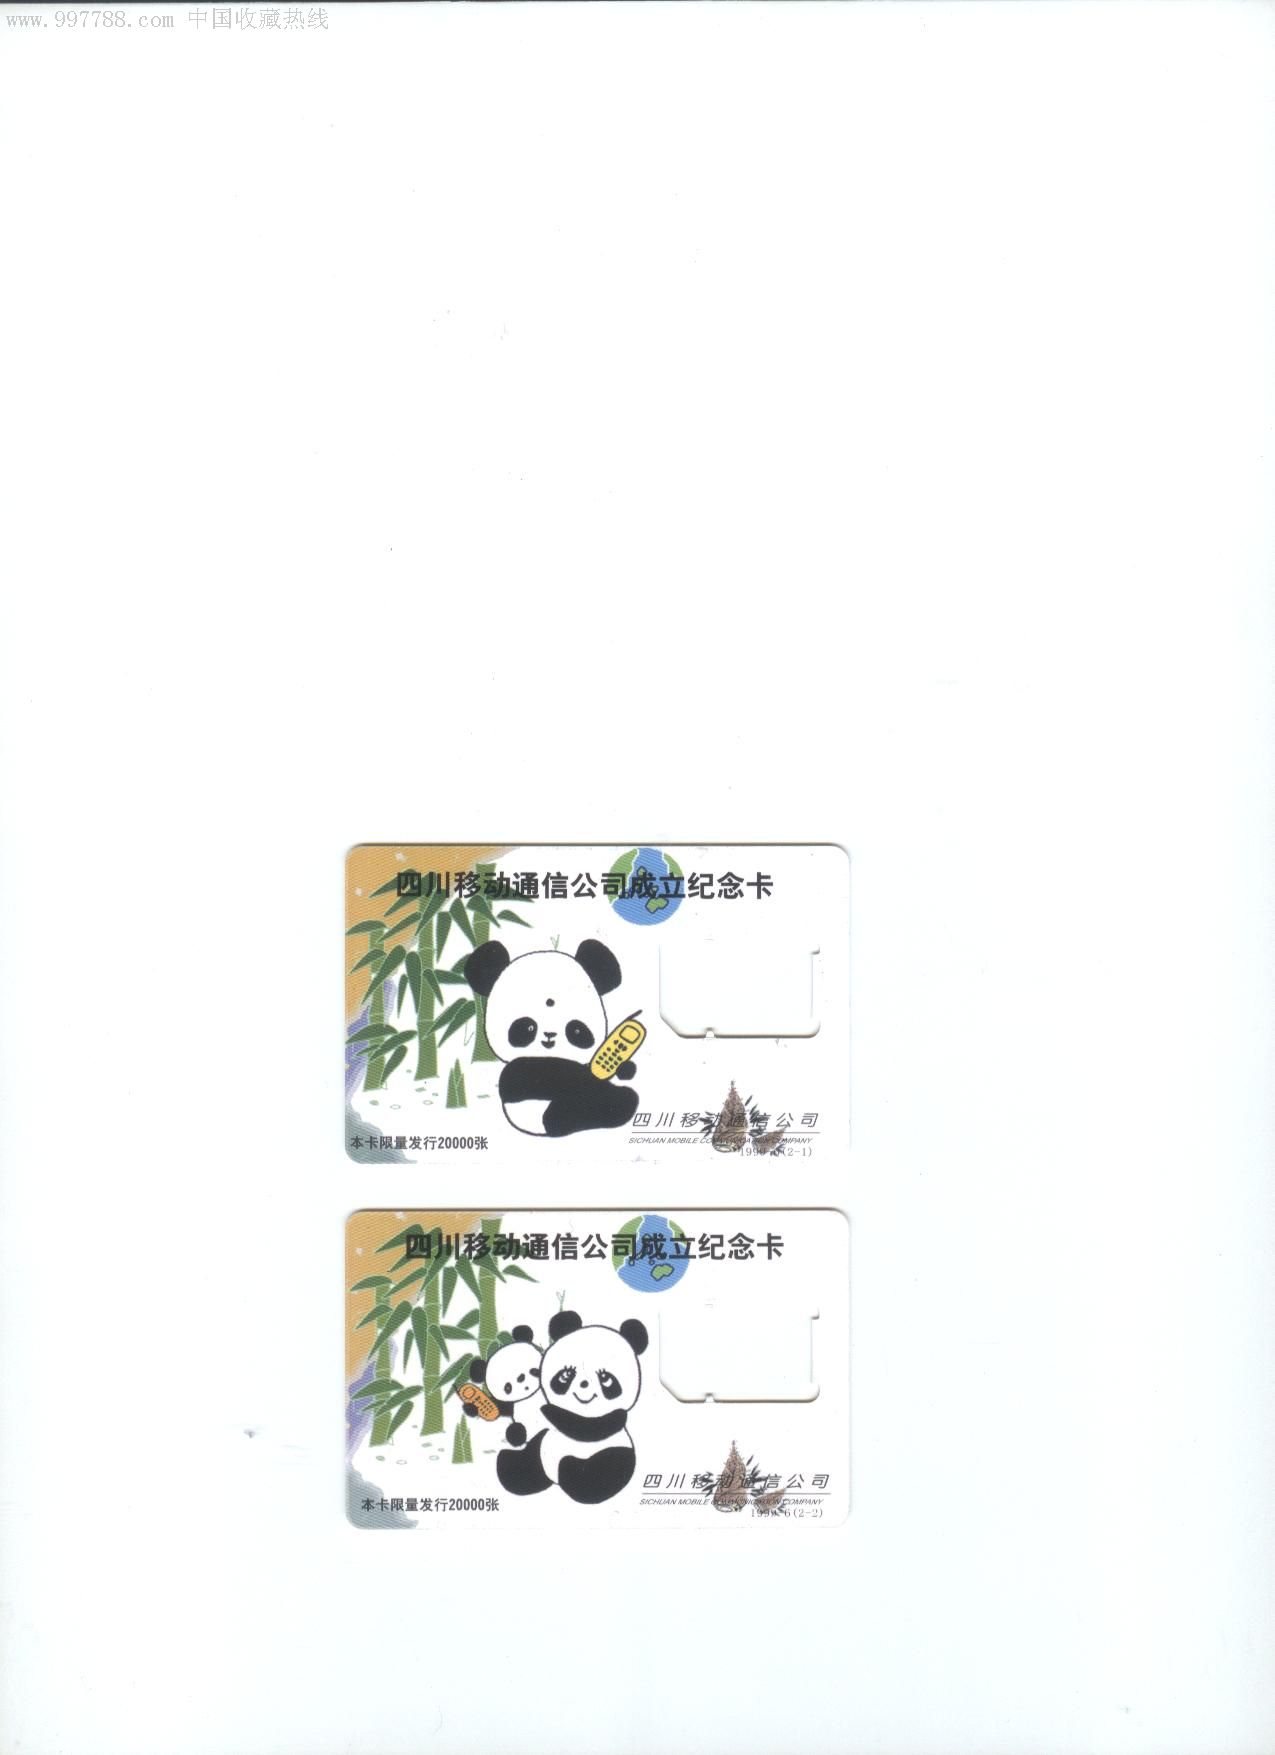 四川移动通信公司成立纪念卡2全-大熊猫